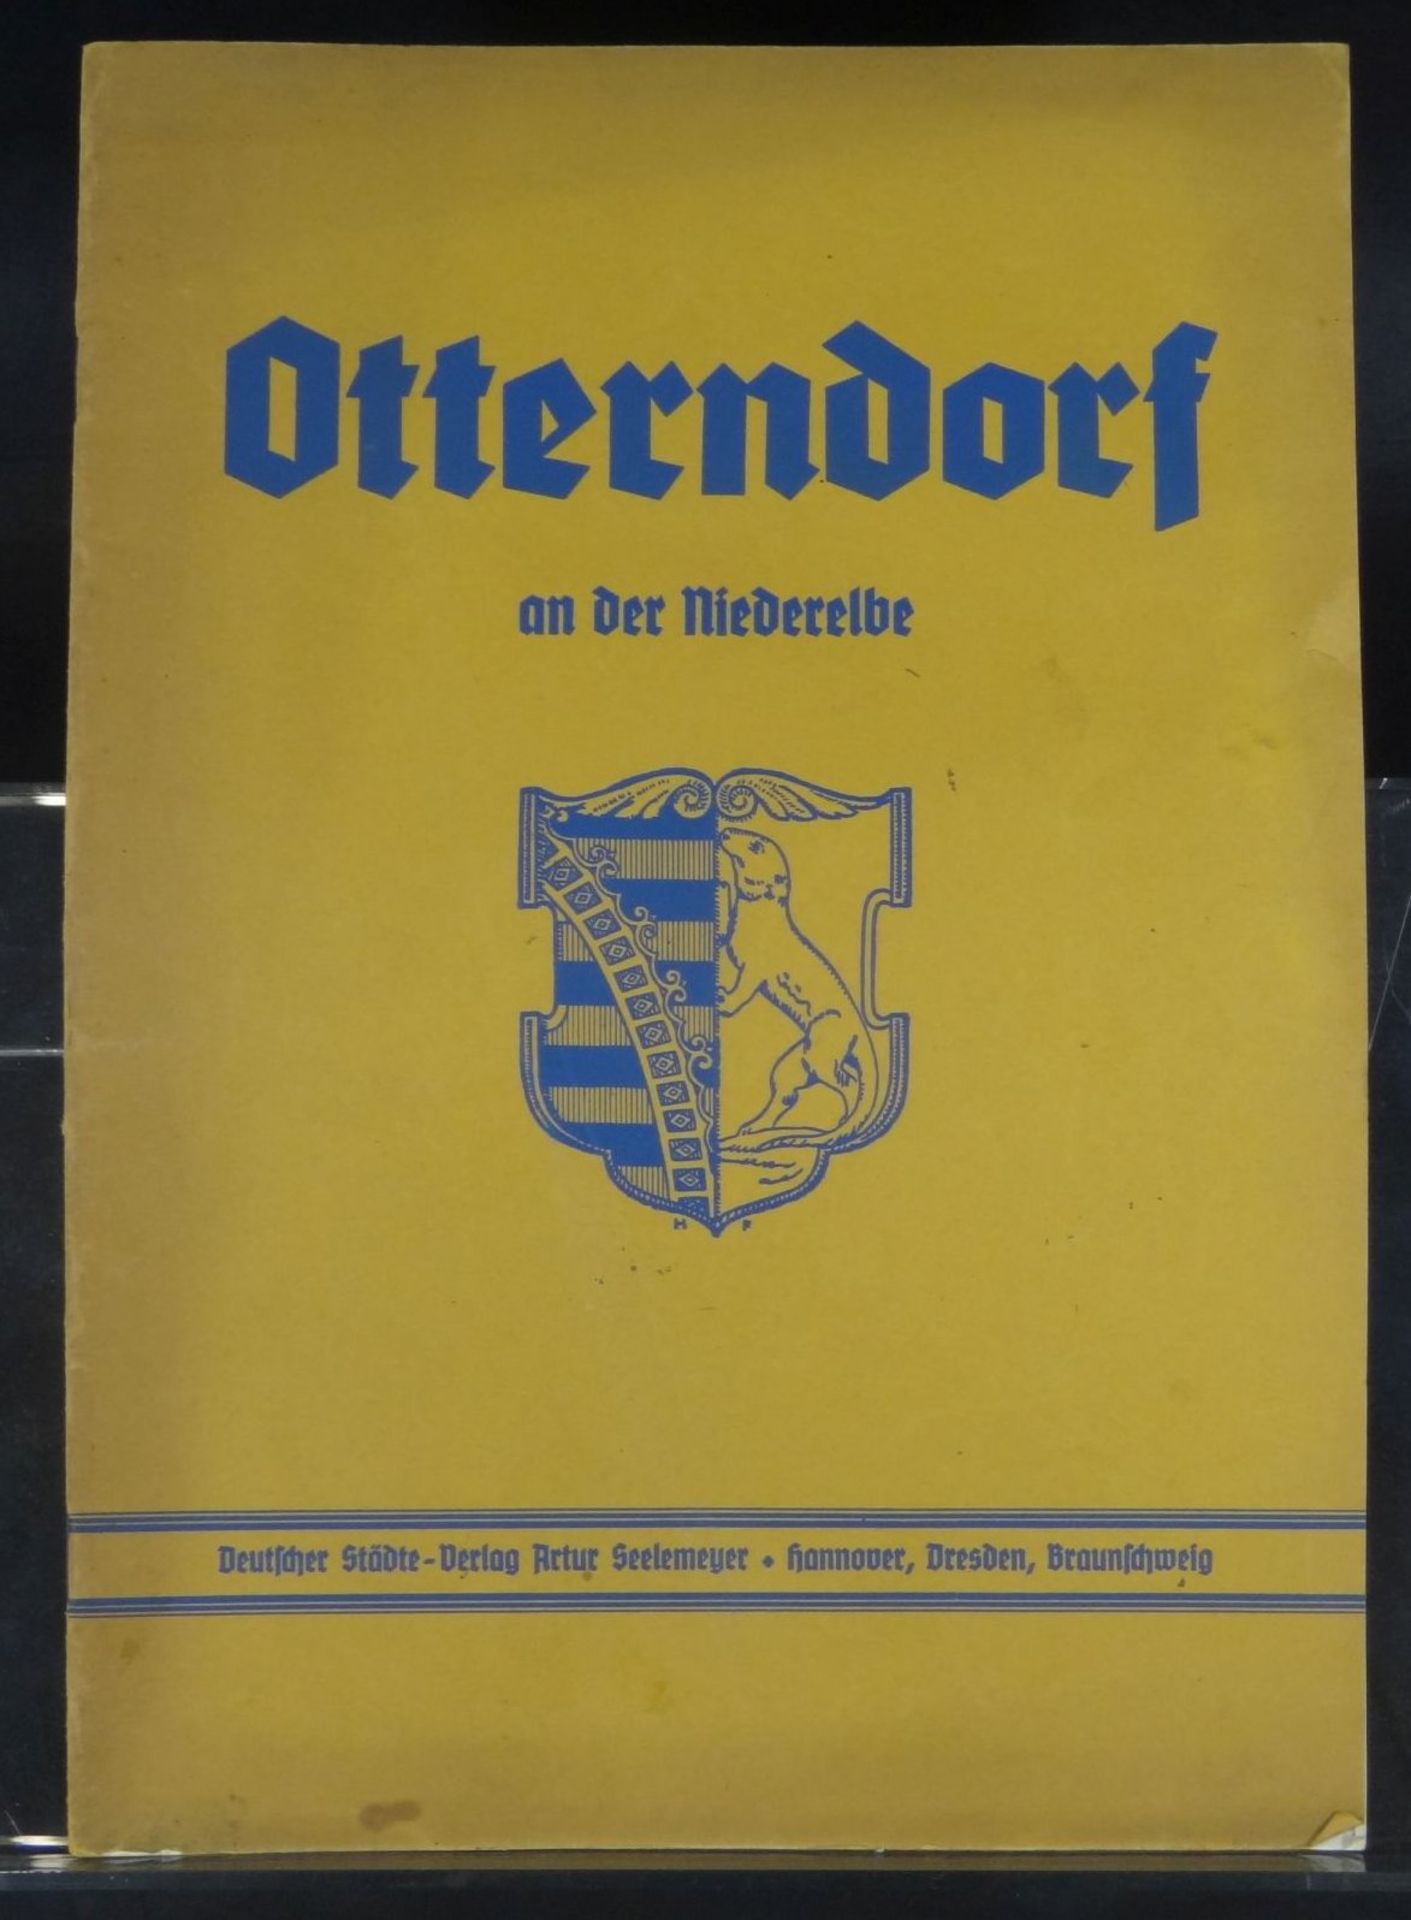 Broschüre "Otterndorf an der Niederelbe" 1935, PP, 30x21 c- - -22.61 % buyer's premium on the hammer